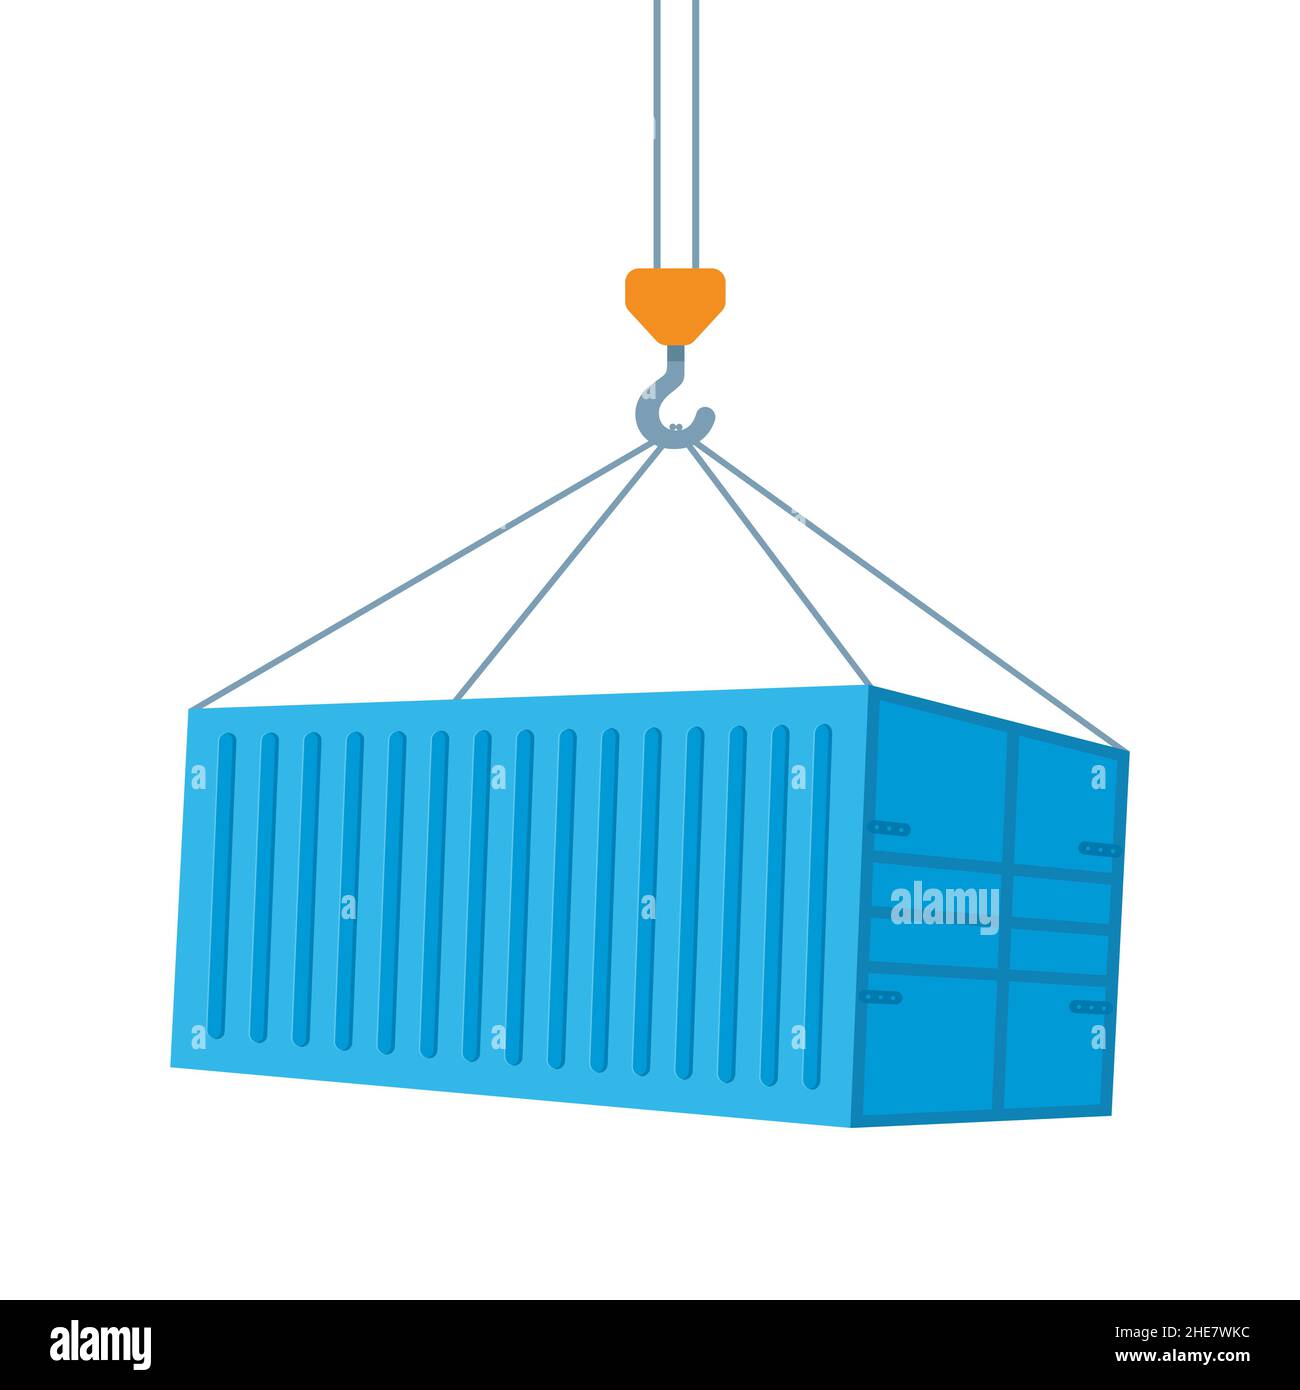 Kran hebt mit blauen Frachtcontainer. Industriekranhaken und Transportbehälter isoliert auf weißem Hintergrund. Frachtversandkonzept. Vect Stock Vektor